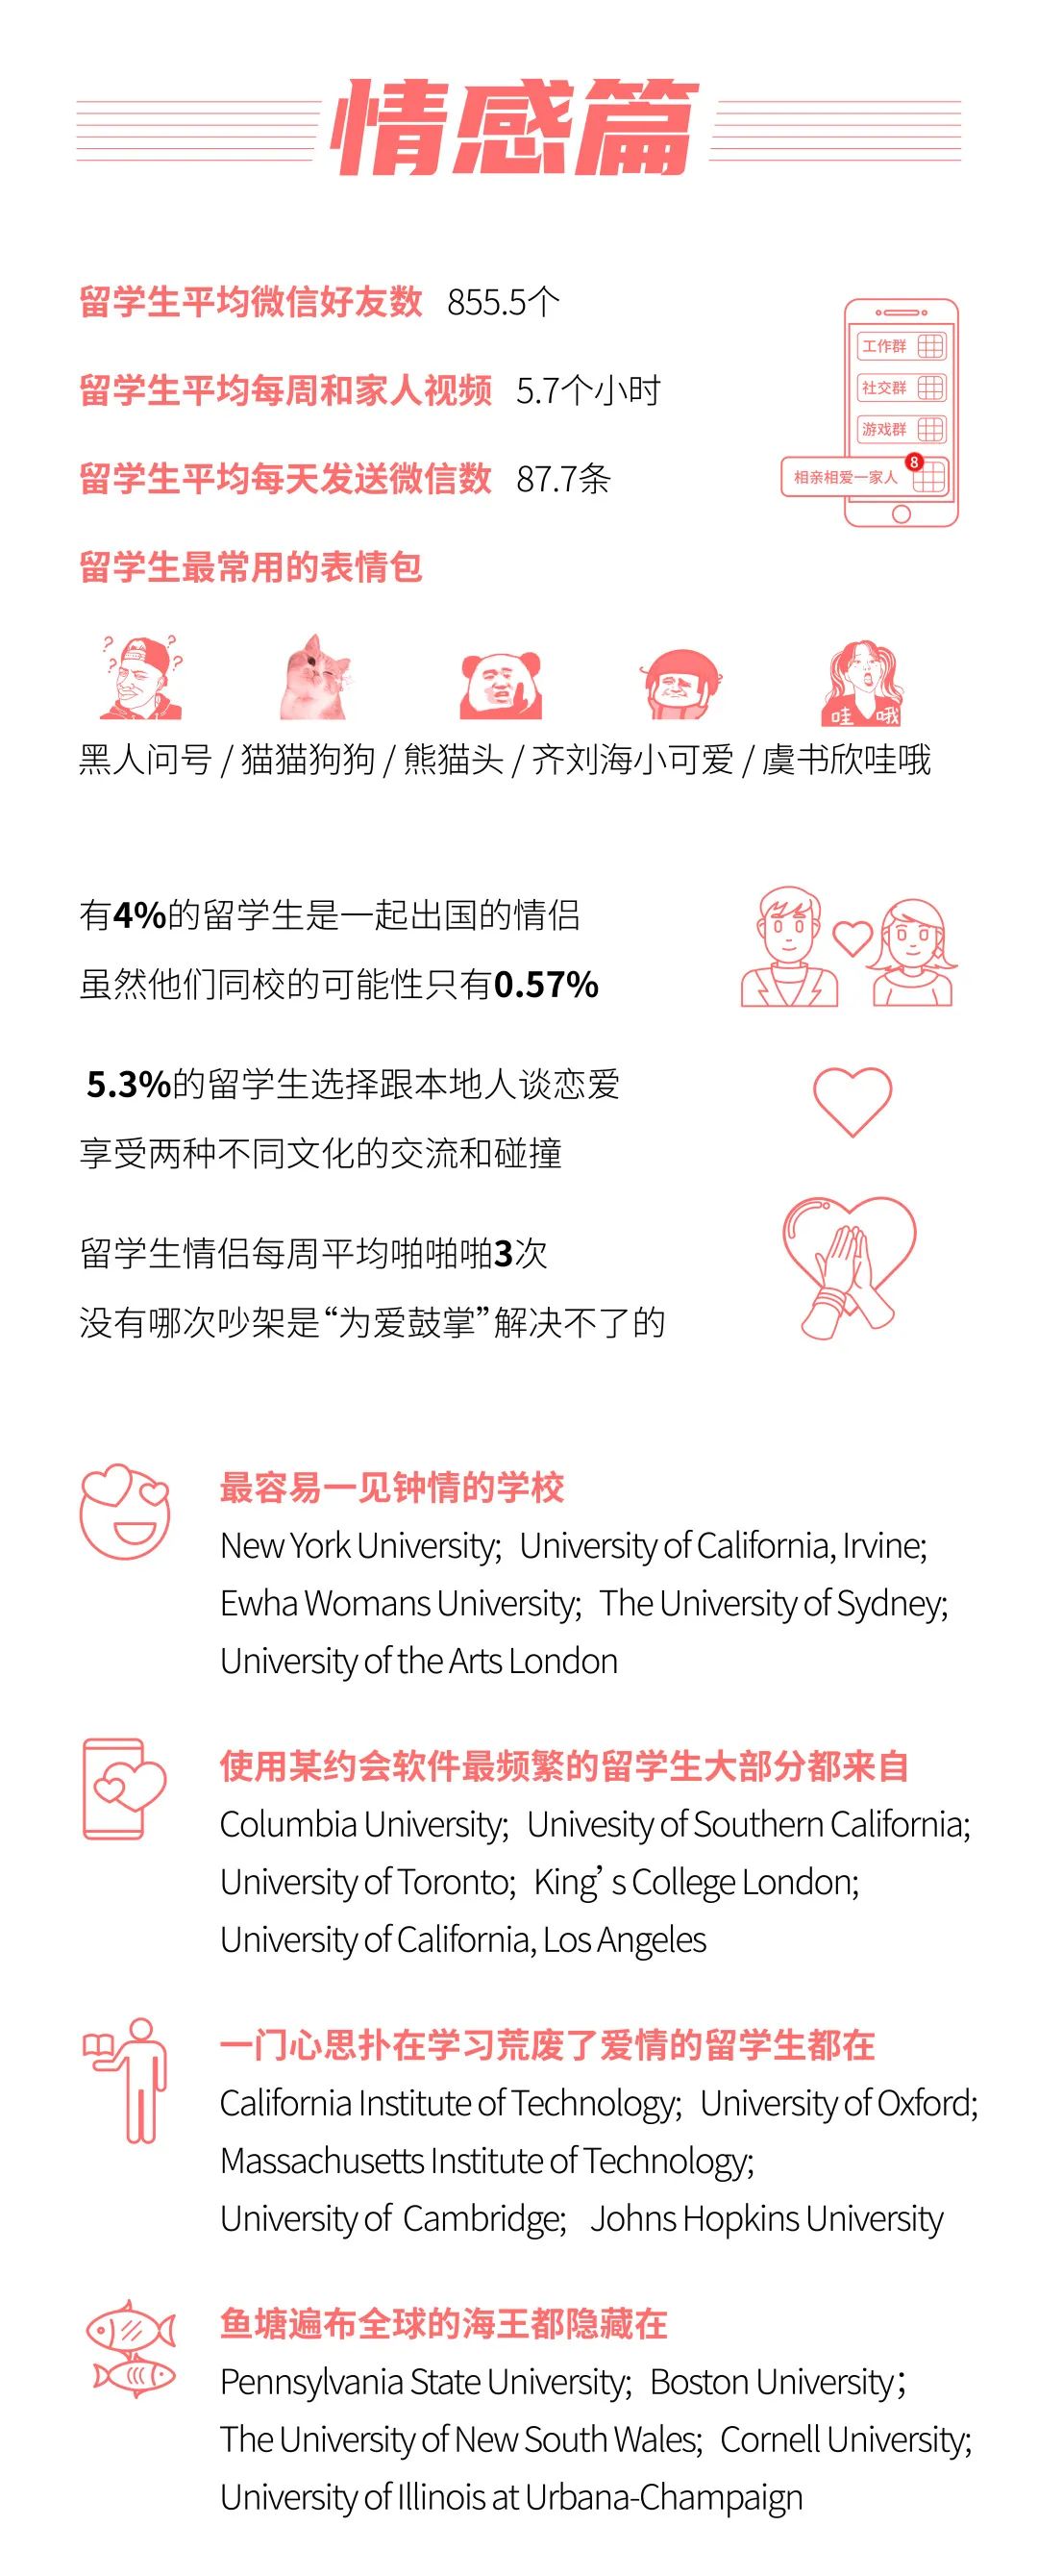 留学大数据《2020中国留学白皮书》